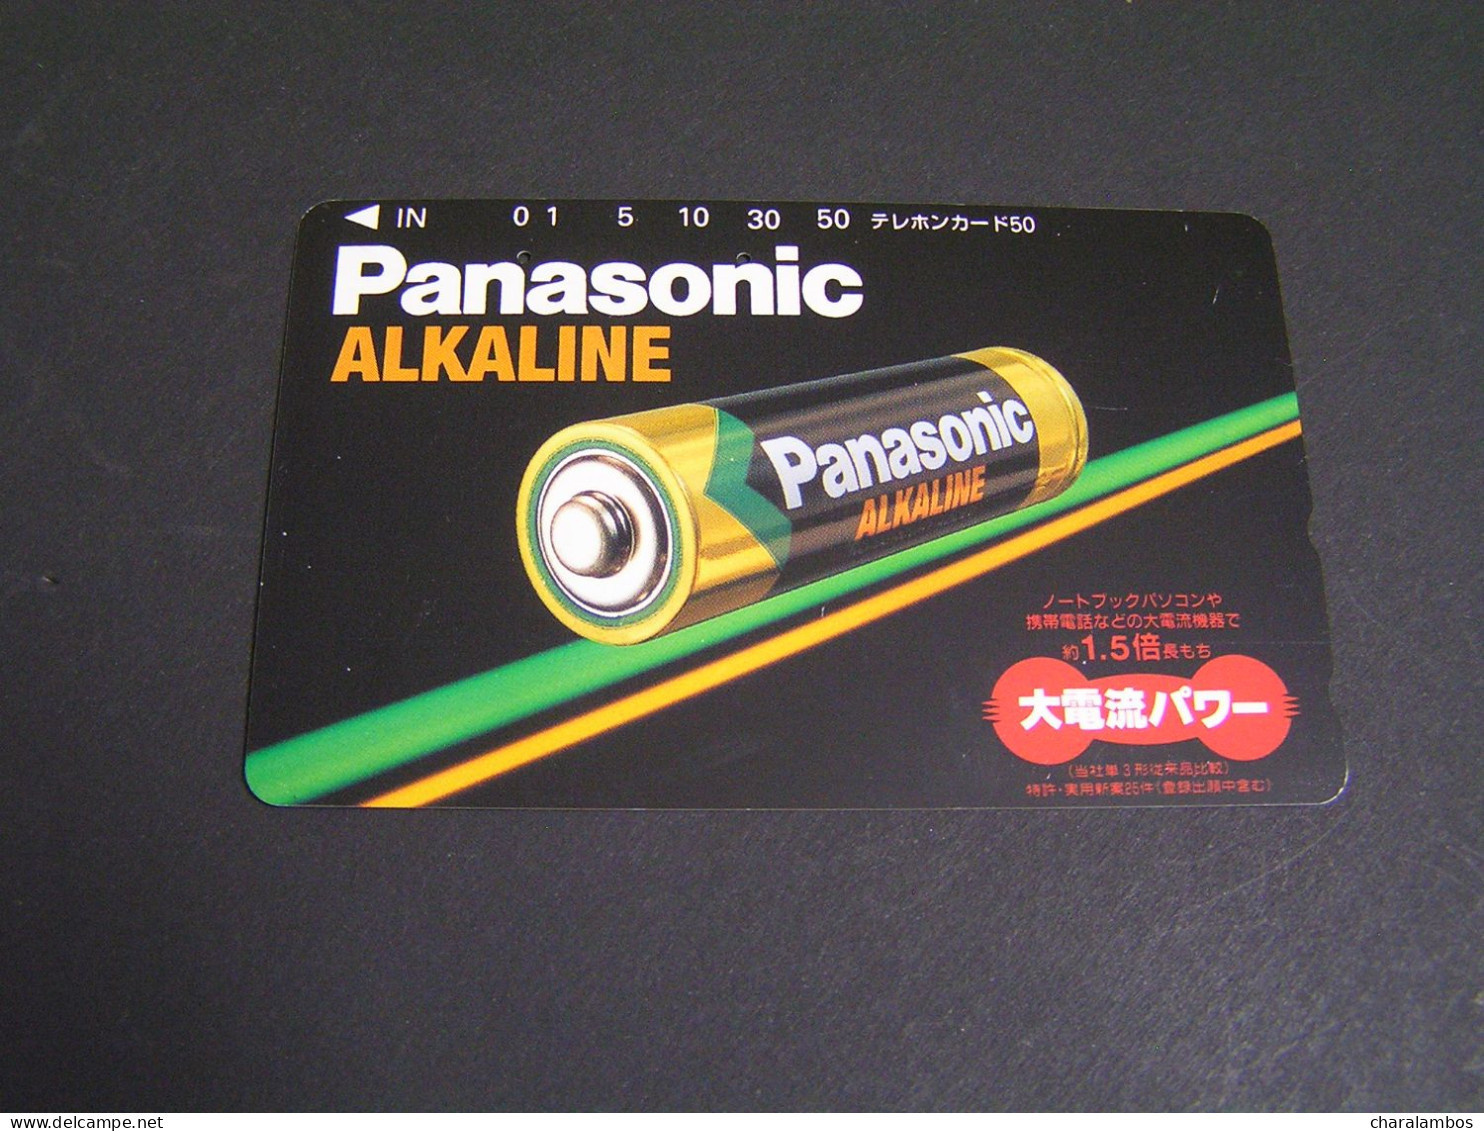 JAPAN Phonecards  Advertising .. - Pubblicitari